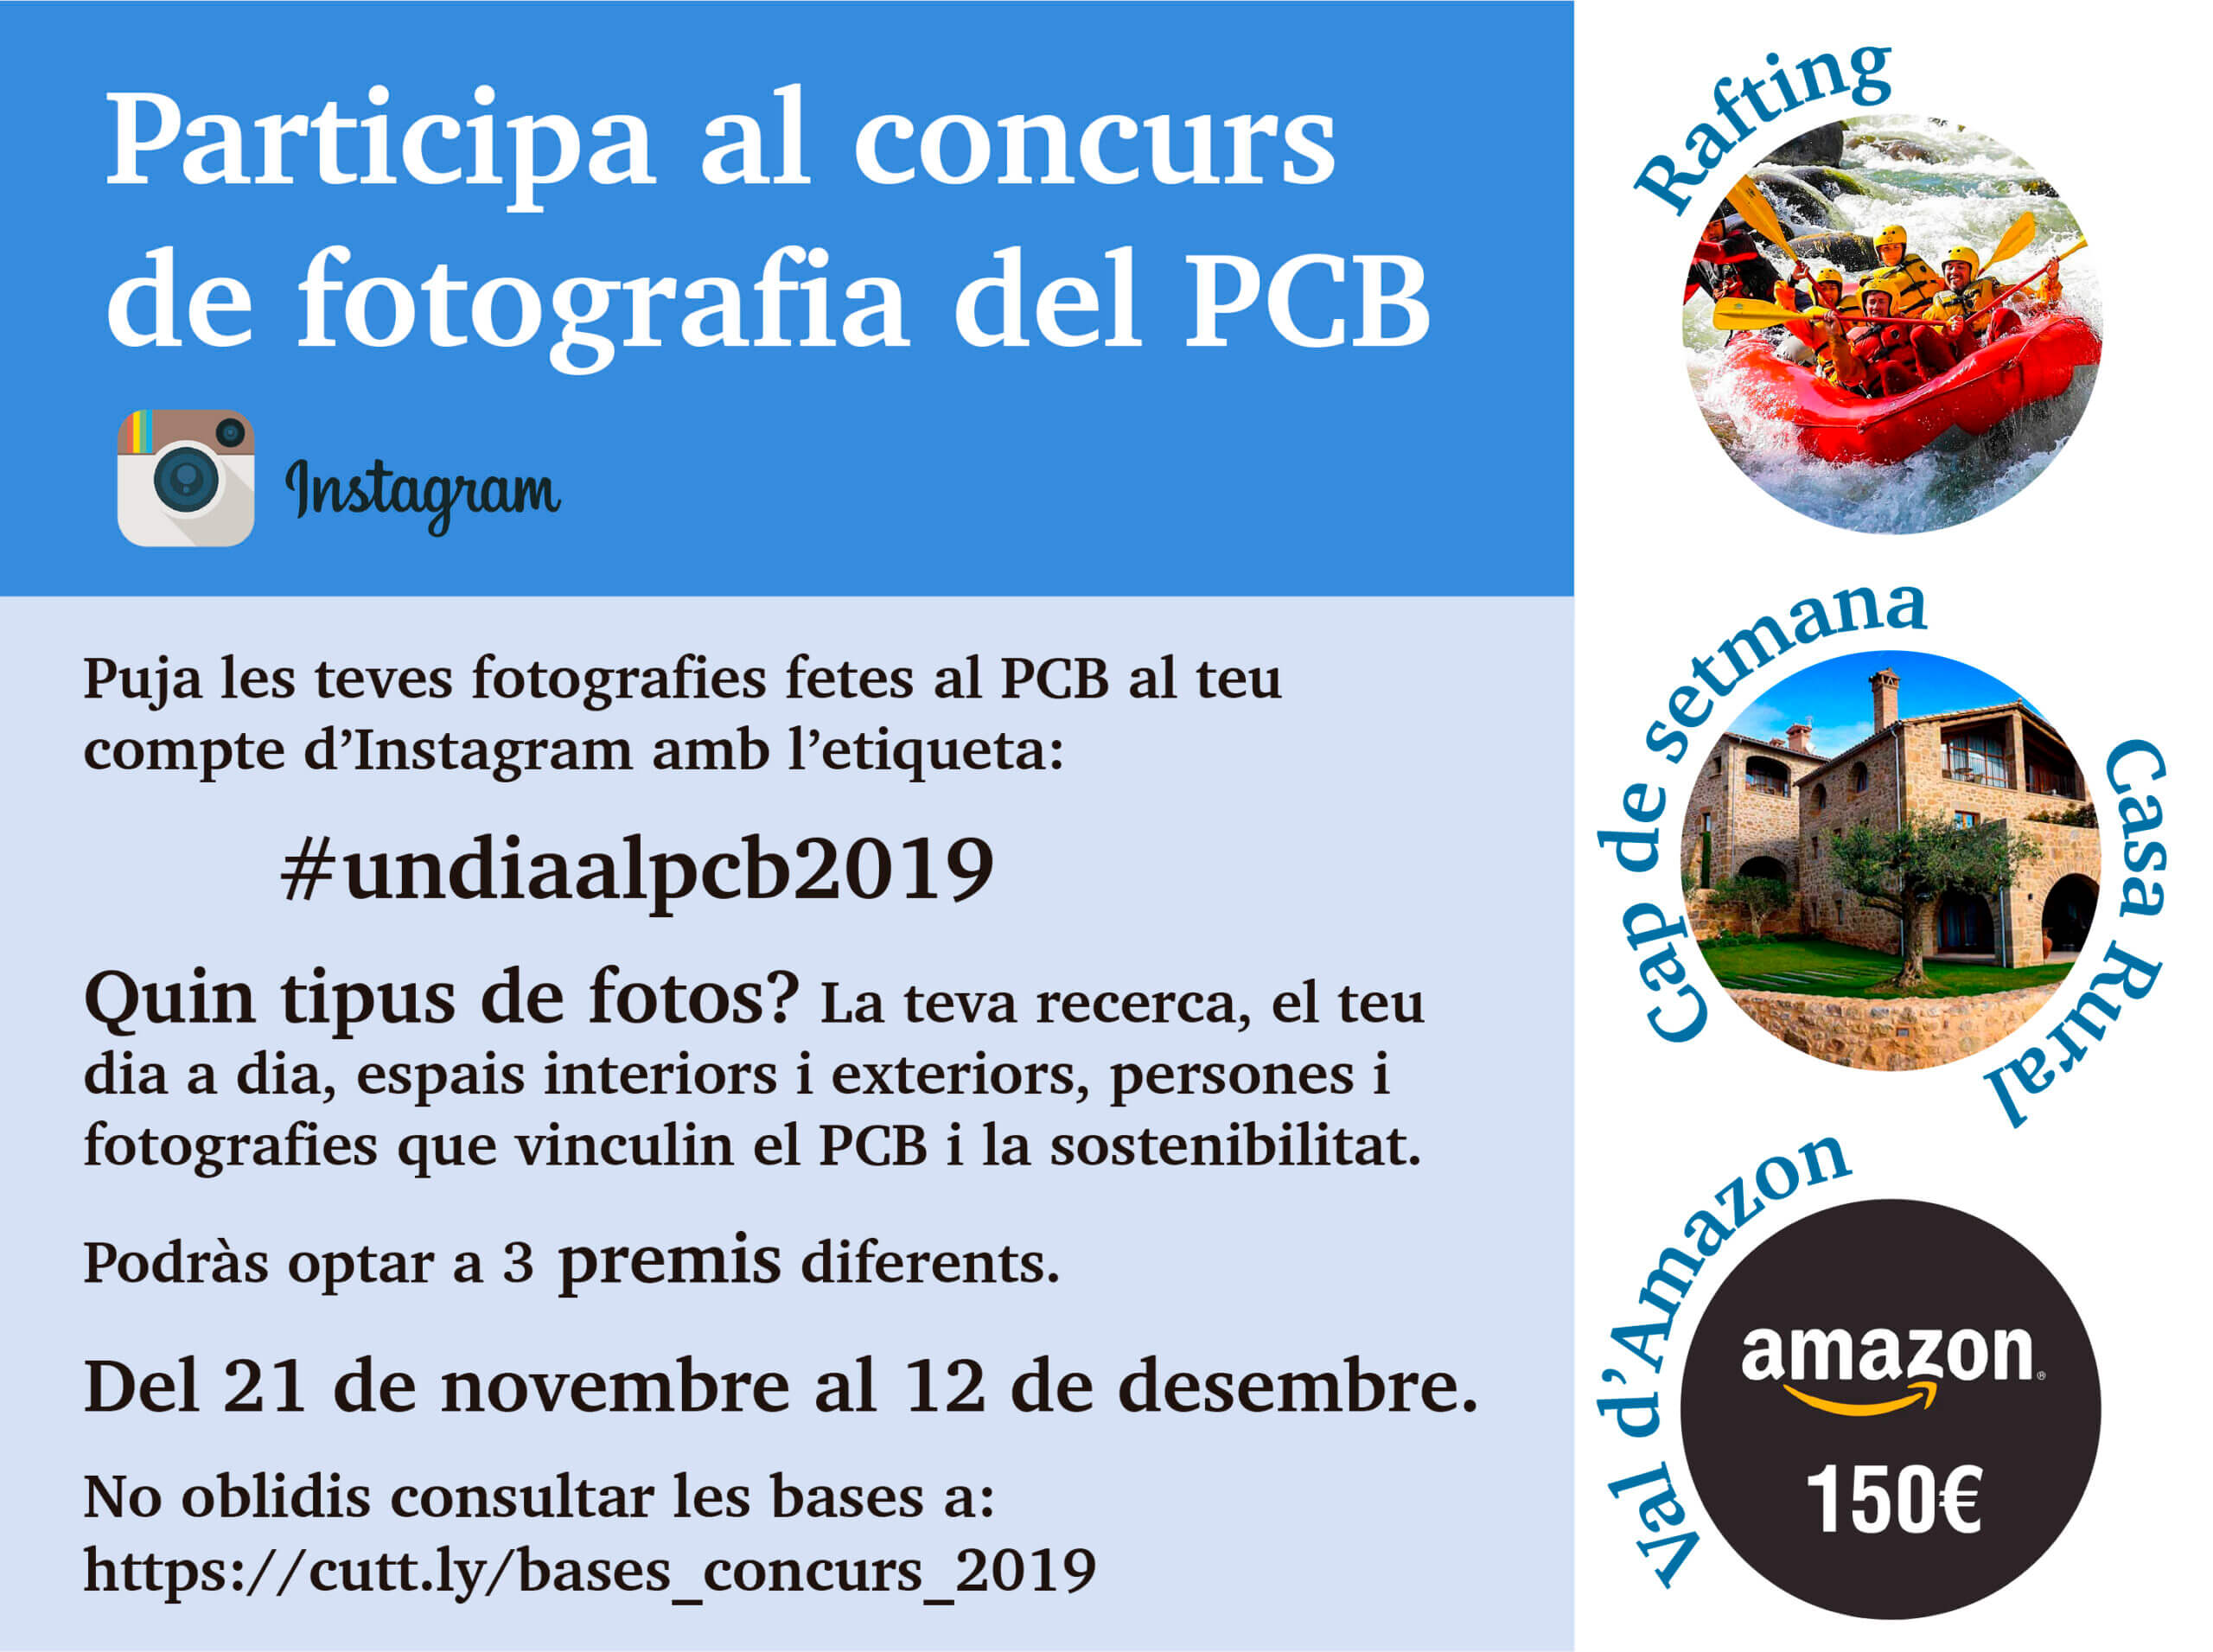 5th edition of the “Un dia al PCB!” Instagram contest